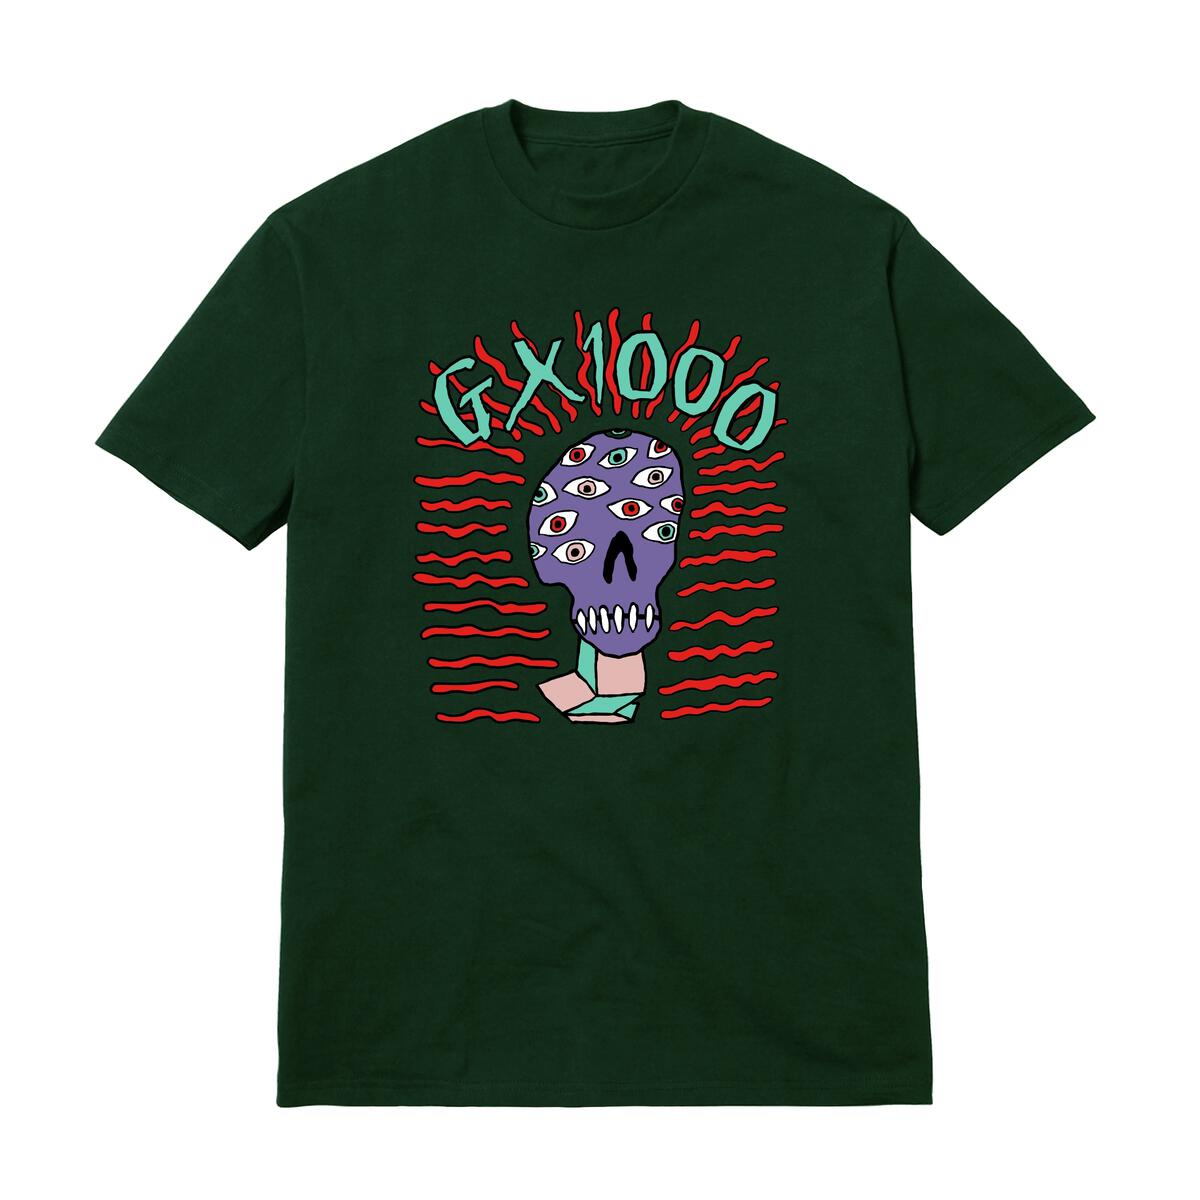 GX1000 - T-shirt Meltdown - Noir